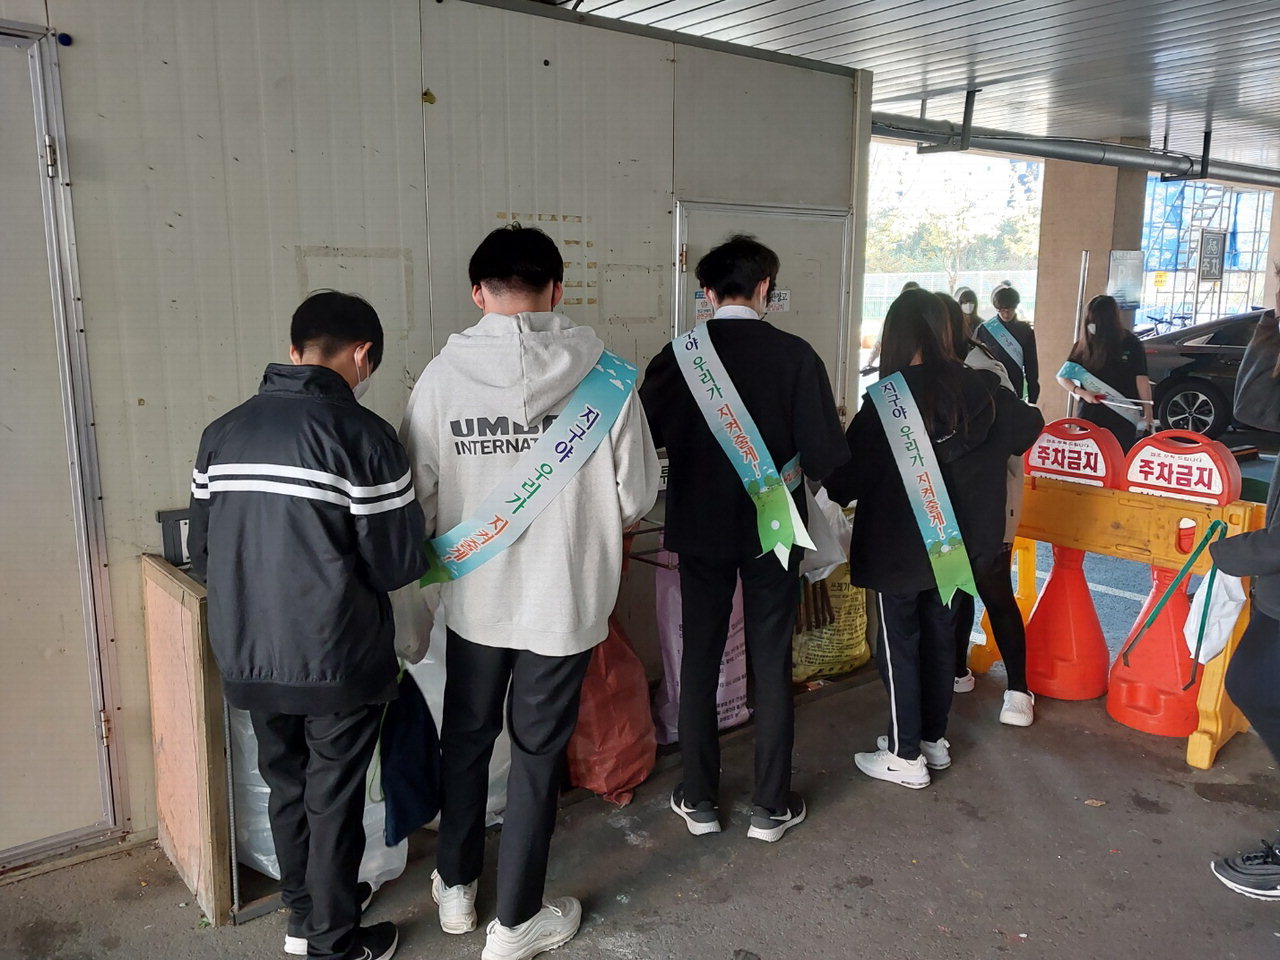 산남중 학생회 봉사부는 쓰줍깅을 실시해 교내외 쓰레기를 줍는 행사를 진행했다. 행사 진행 중 쓰레기봉투는 생분해성 봉투를 사용했다.